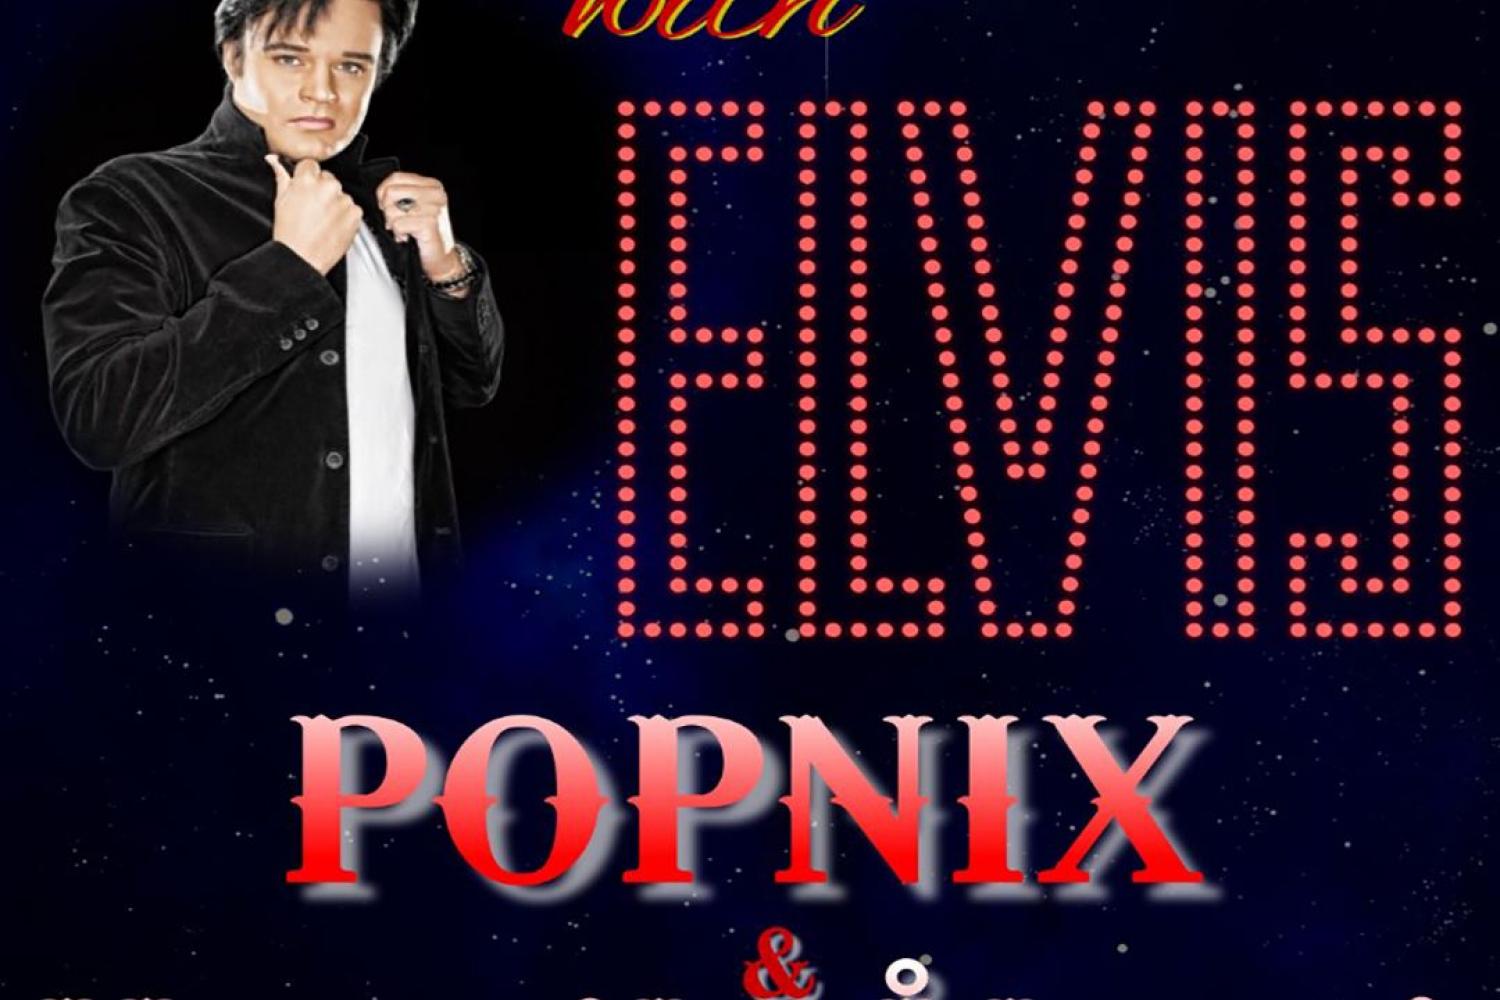 An Evening With Elvis - Popnix och Henrik Åberg